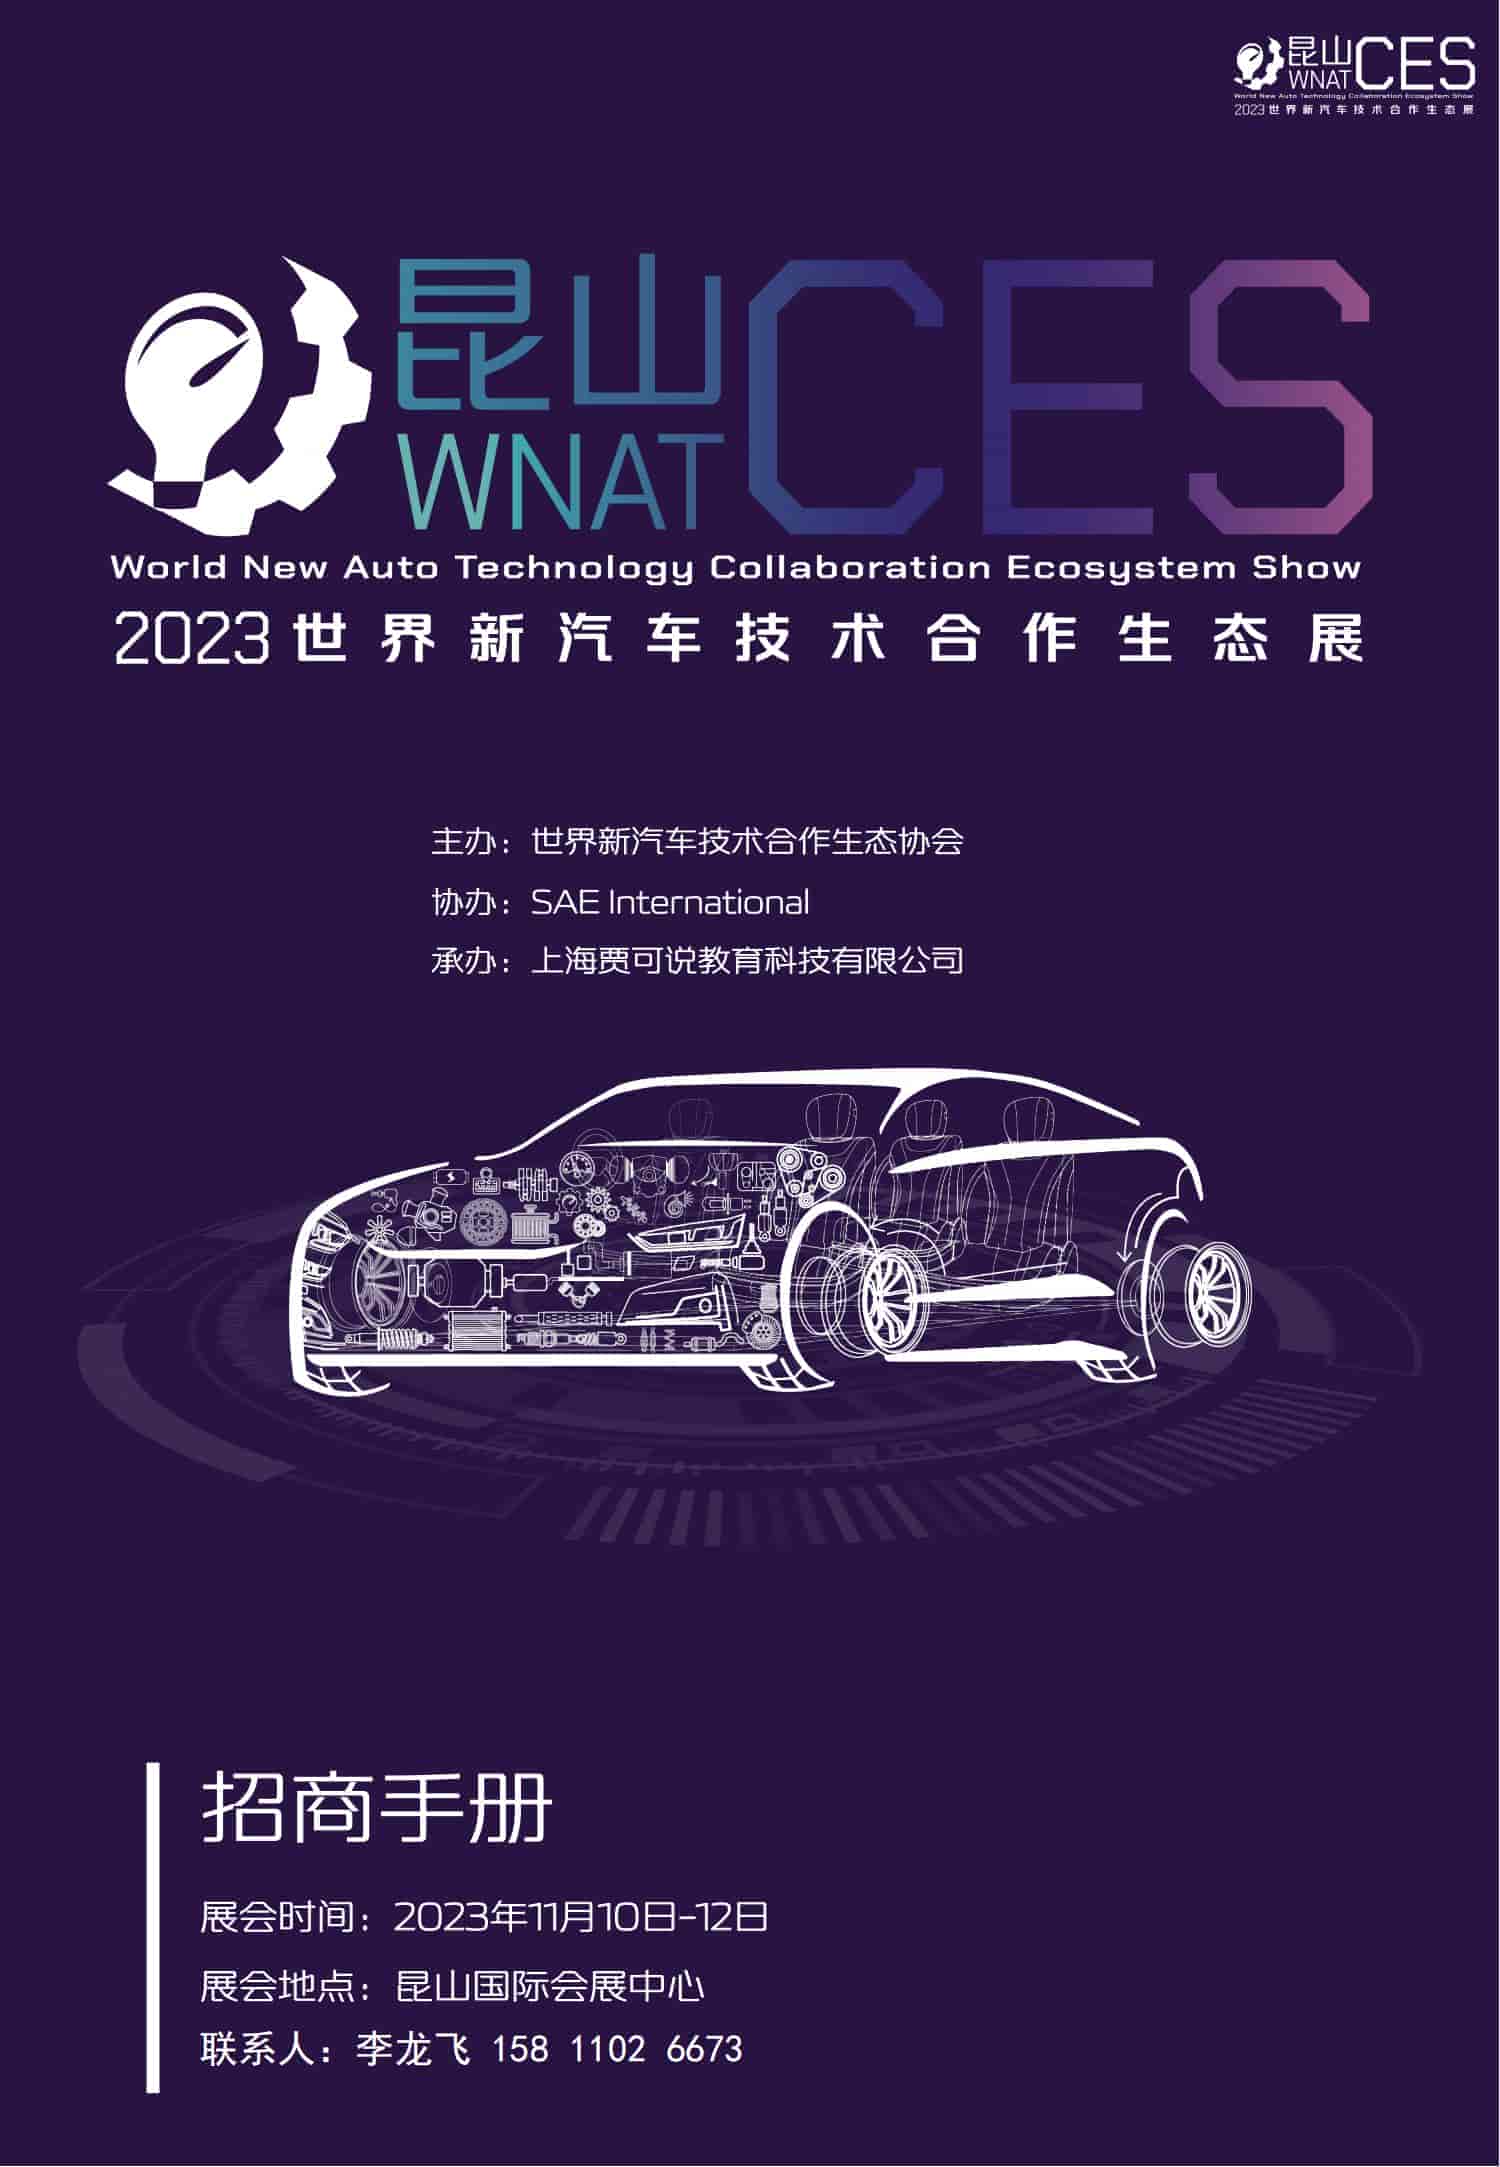 招商手册-2023世界新汽车技术合作生态展_00.jpg